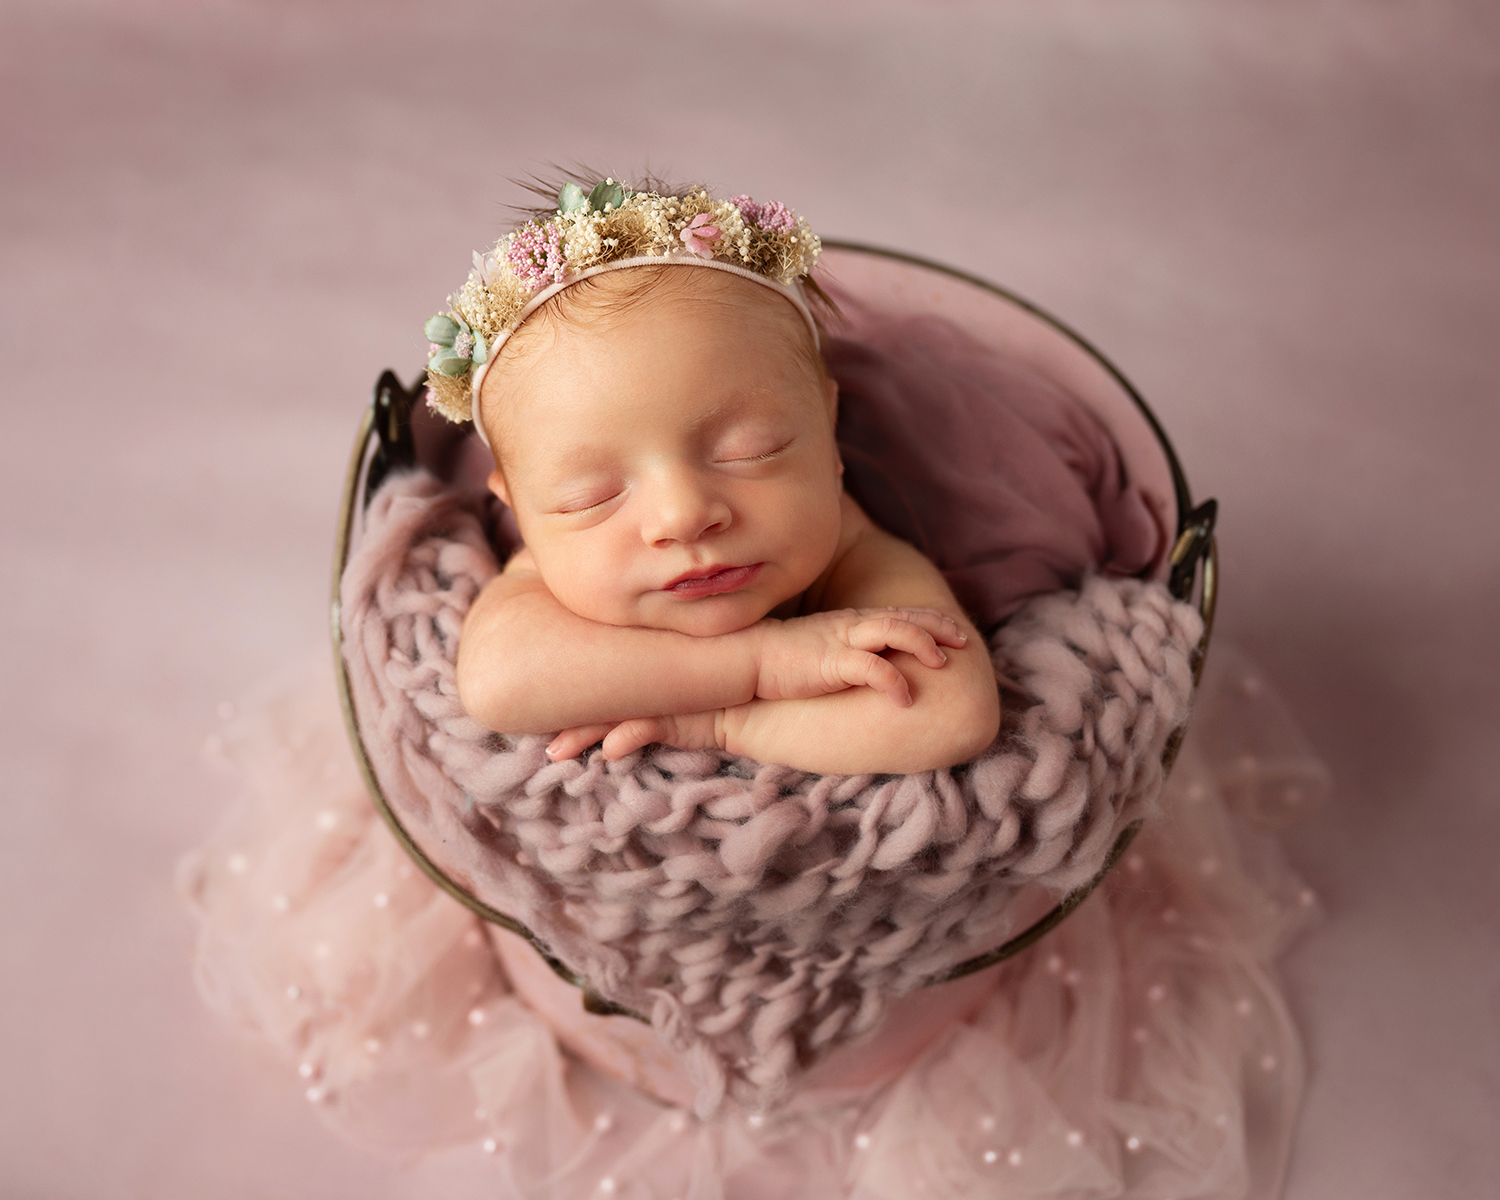 newborn photos taken in Aubrey, TX in-home